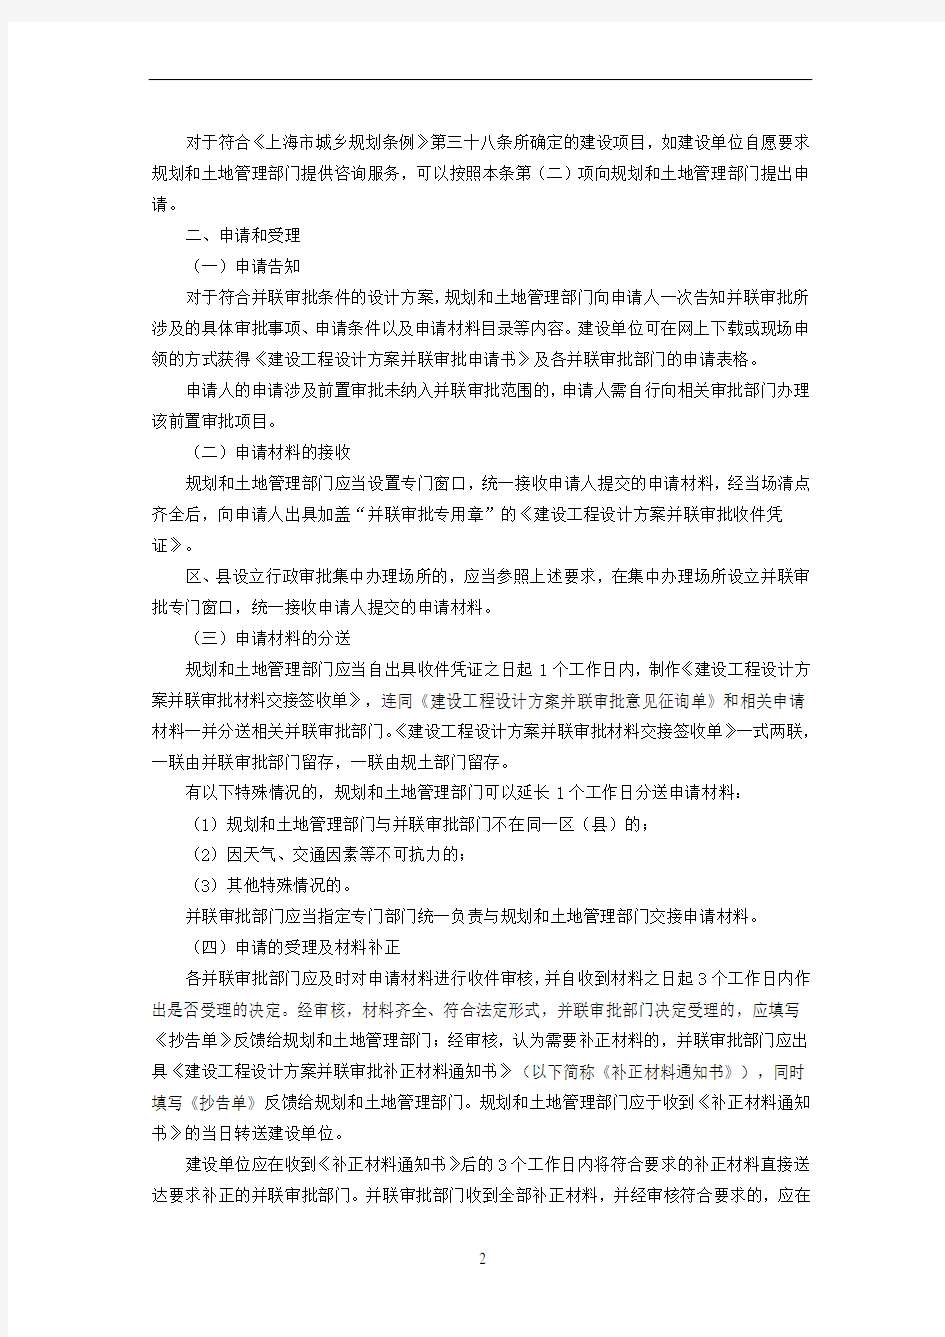 上海市建设工程设计方案并联审批操作规程